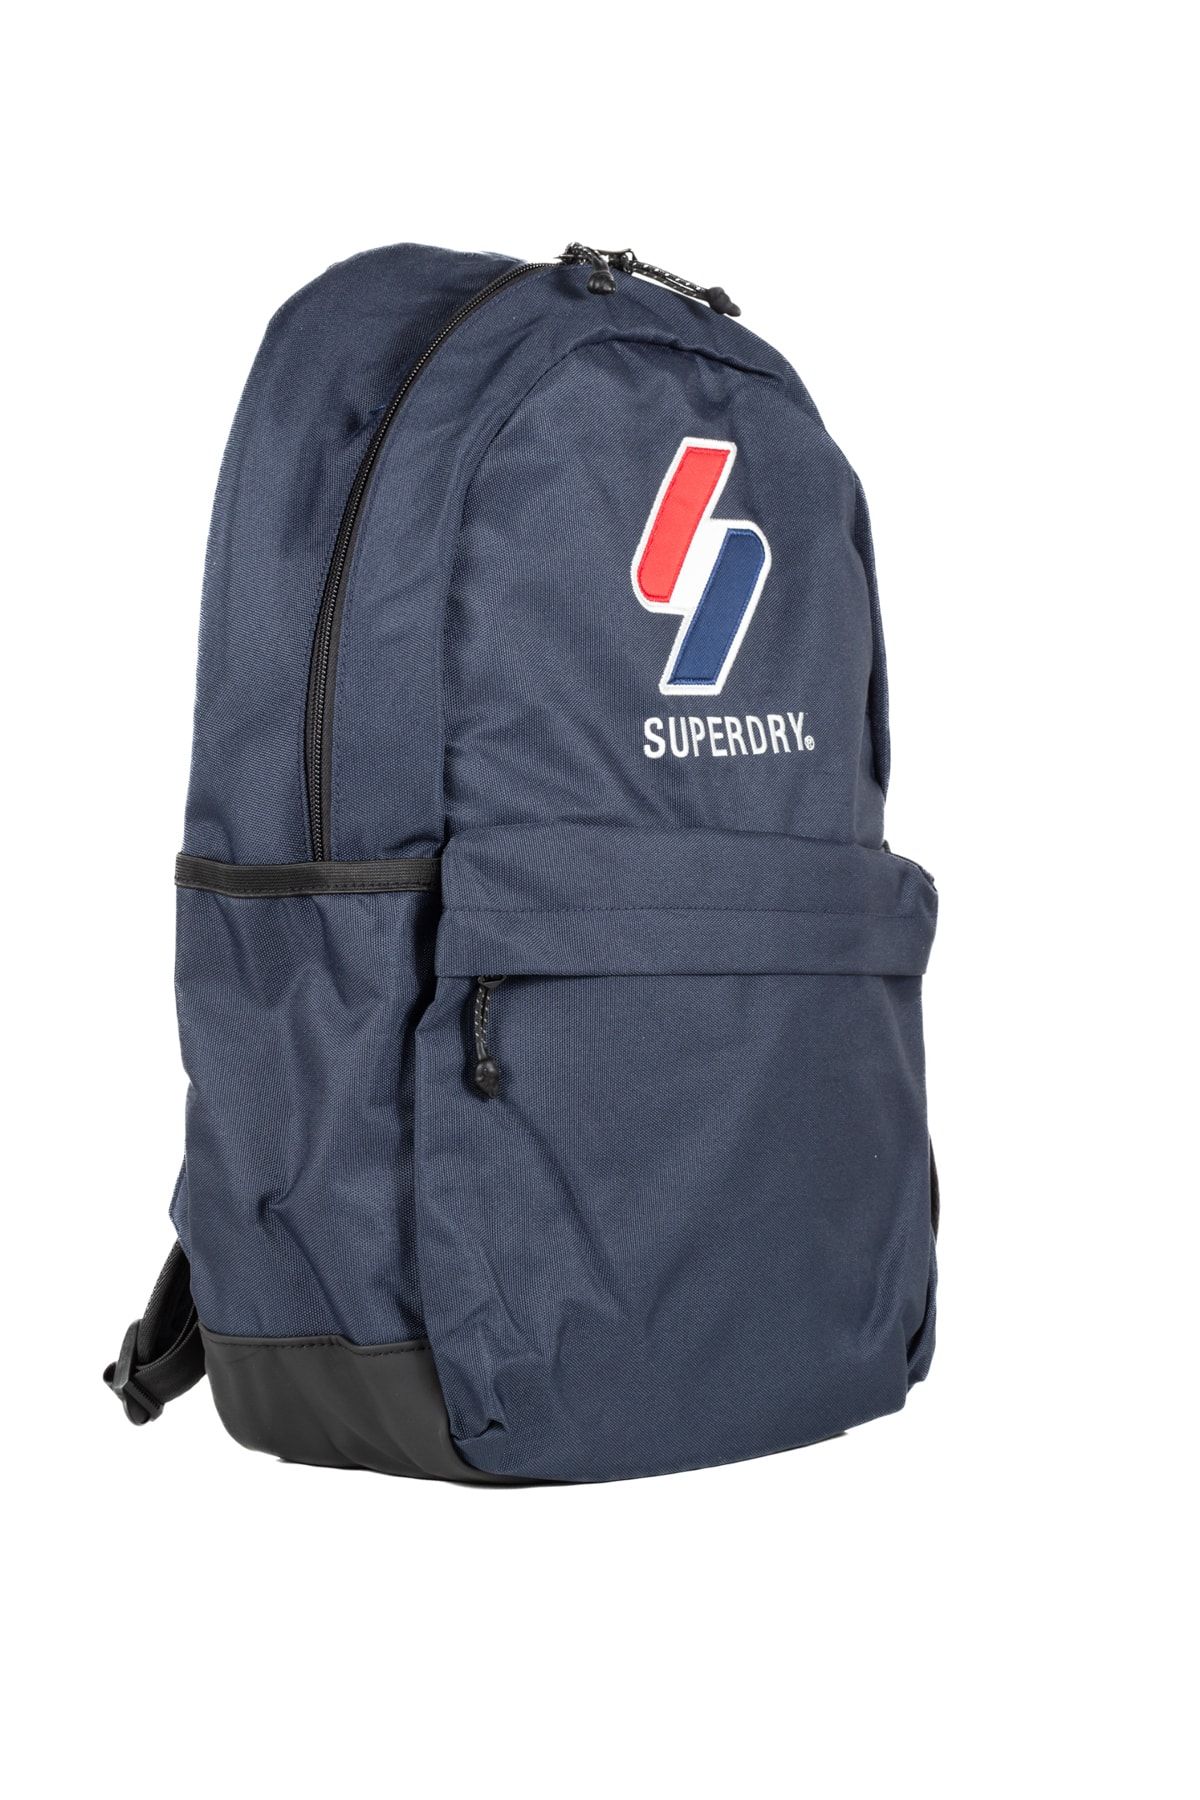 Superdry backpack waterproof tarp schoolbag, Luxury, Bags & Wallets on  Carousell